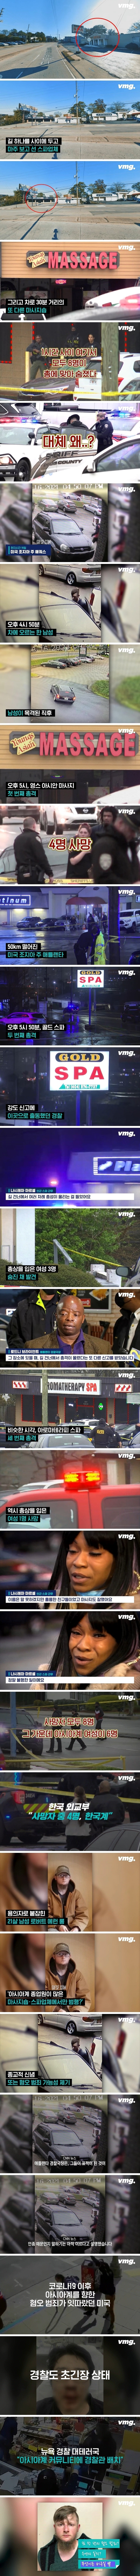 애틀랜타 연쇄 총격 사건에 한국계 4명 사망.jpg